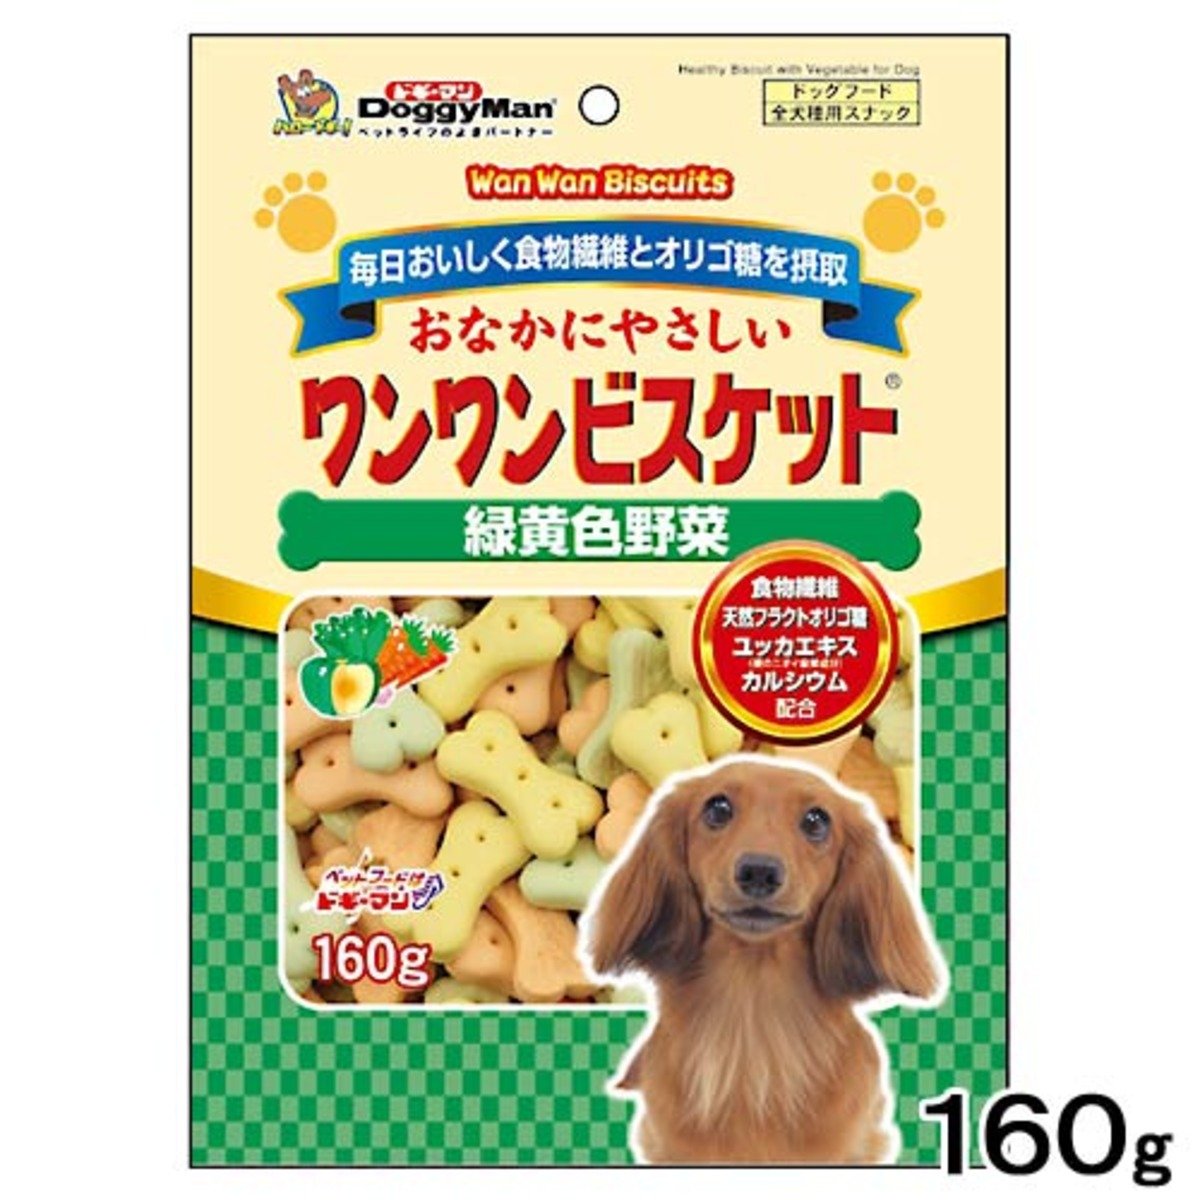 日本 犬用 三色雜菜 骨形夾心餅 160g 腸胃健康 關節健康 狗小食